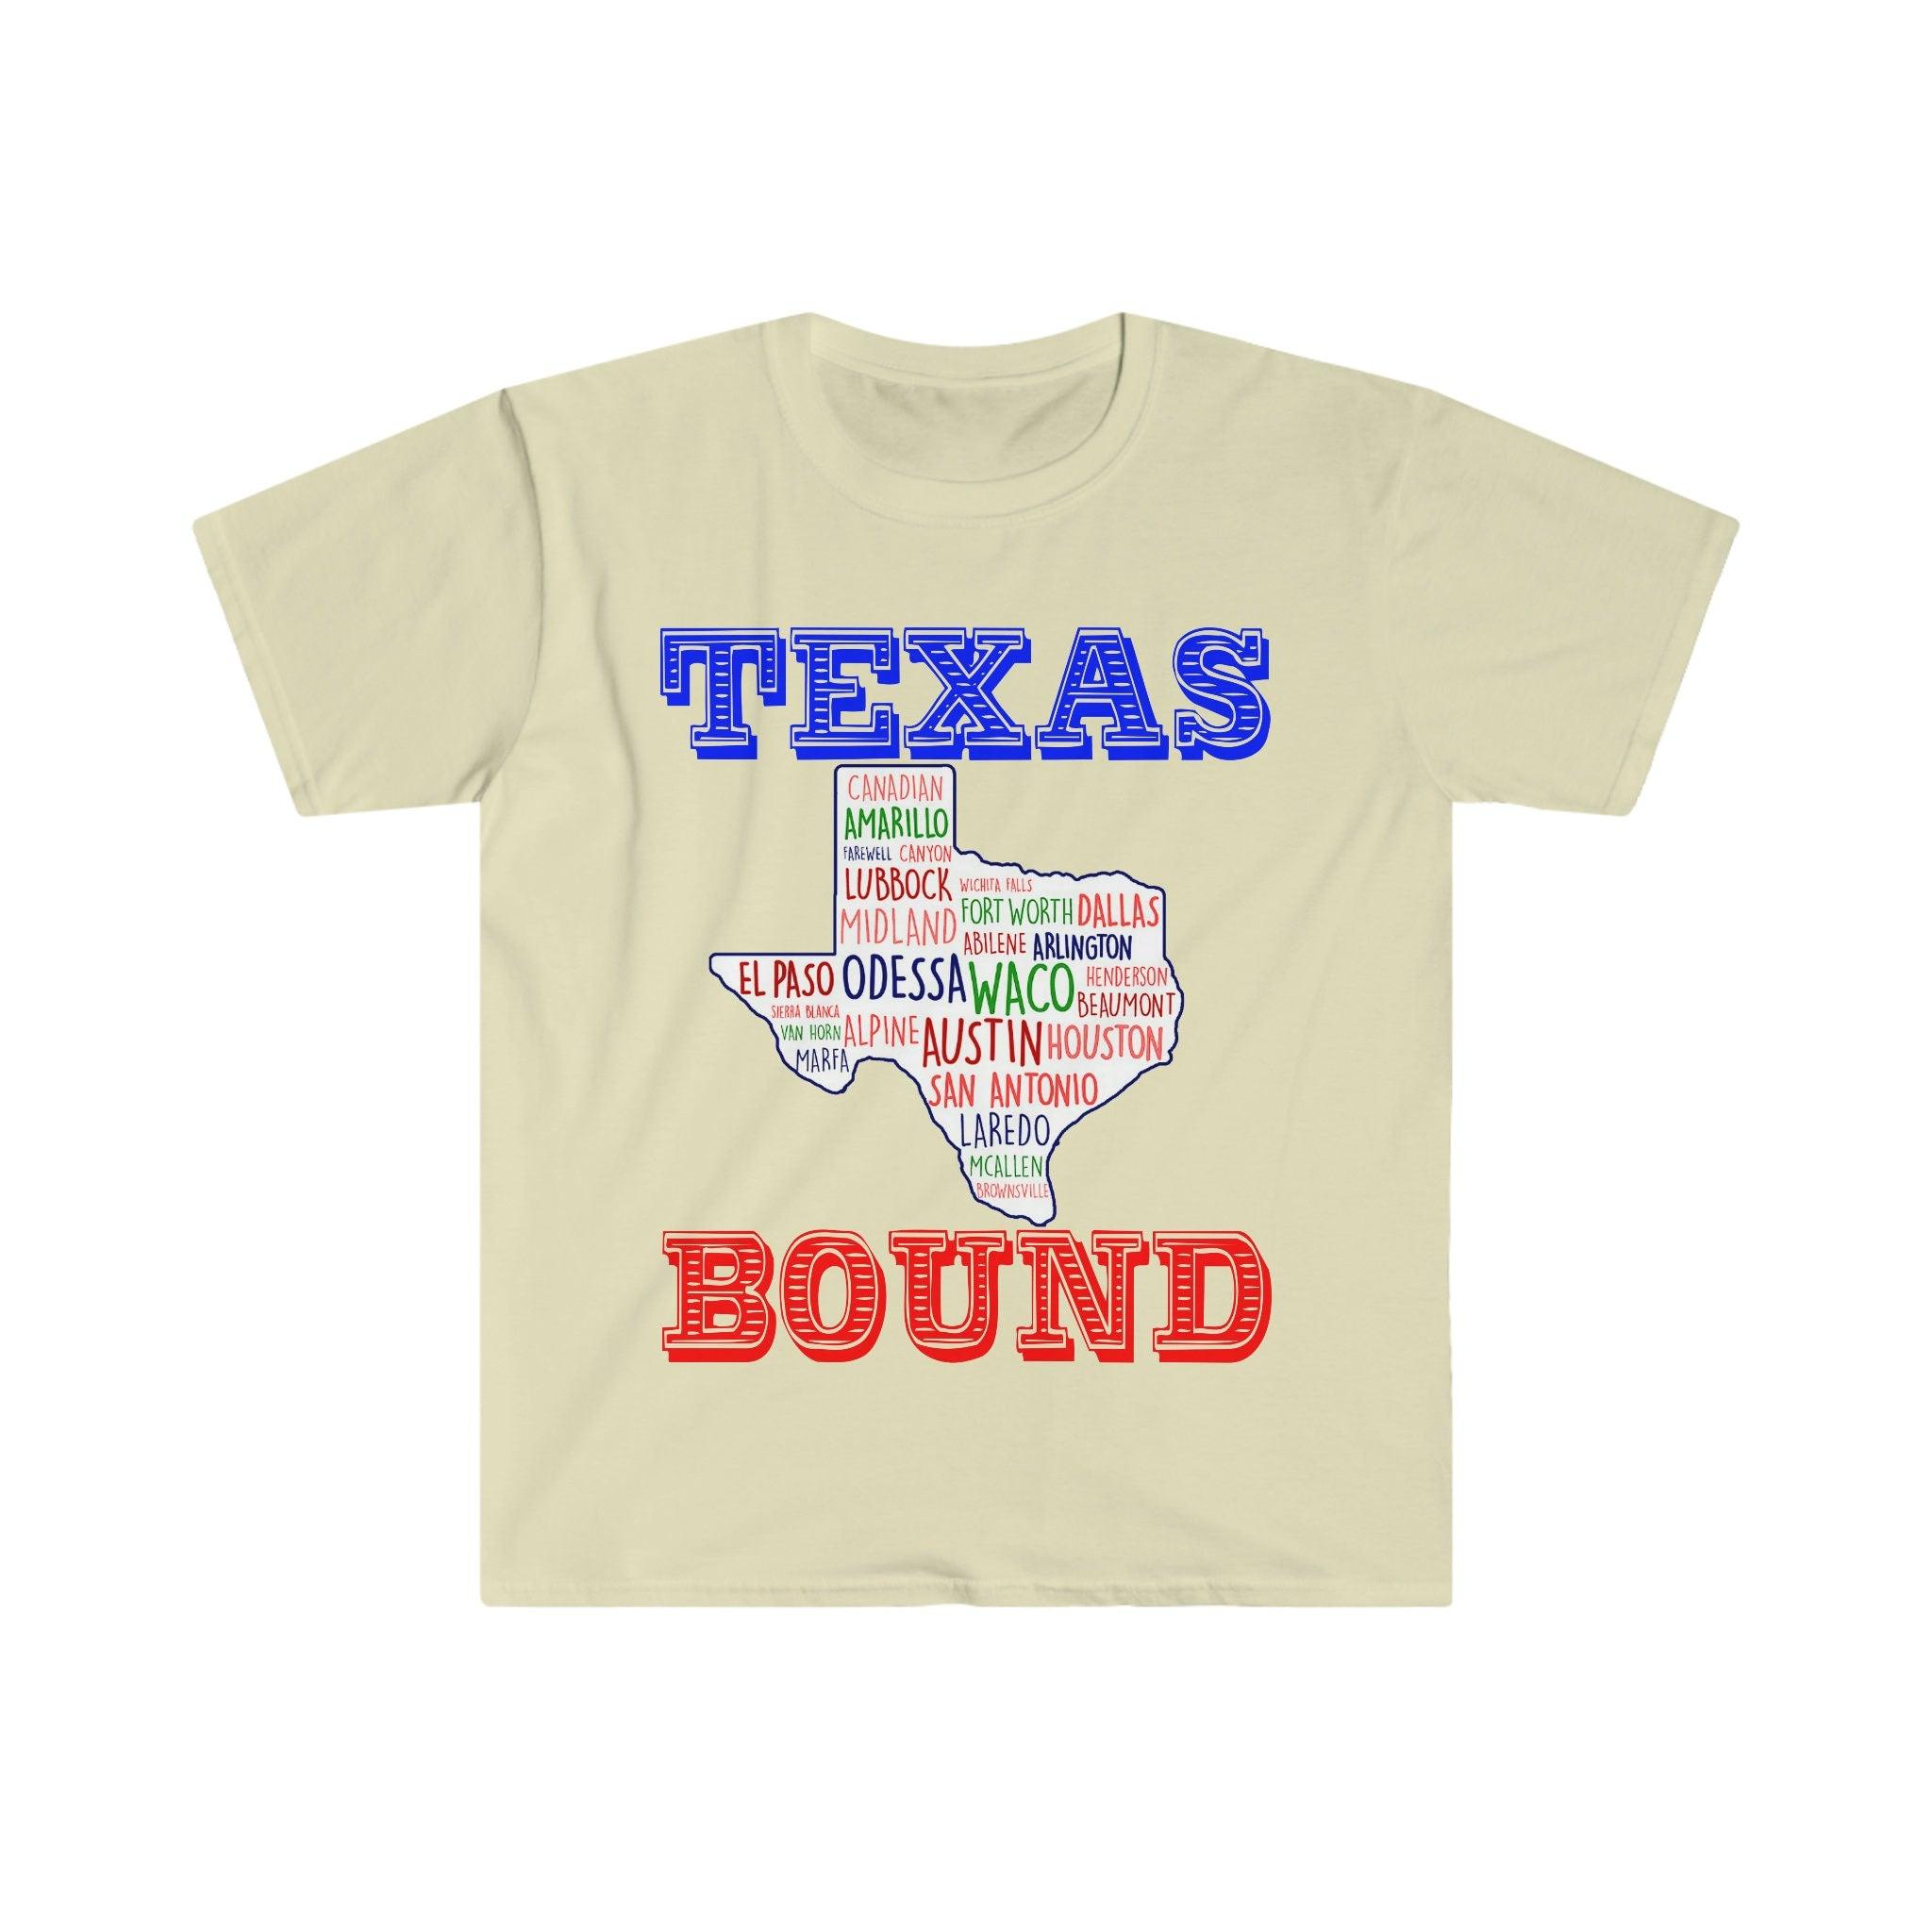 Con destino a Texas | Camisetas de Texas Places /Camisetas con mapas de Texas, Mudarse a Austin, Bienvenido a Texas Gift, Texas Bound, Nuevo en Texas, Mudarse a DFW Beat biden aumento de impuestos, Plan fiscal de Biden, liberal costero, Houston, mudarse a austin, Mudarse a DFW, Mudarse a Texas, Mudarse a Texas Taza, Nuevo en Texas, Republicano, Camiseta, camisetas, Texas con destino, chica de Texas, republicano de Texas en - plusminusco.com